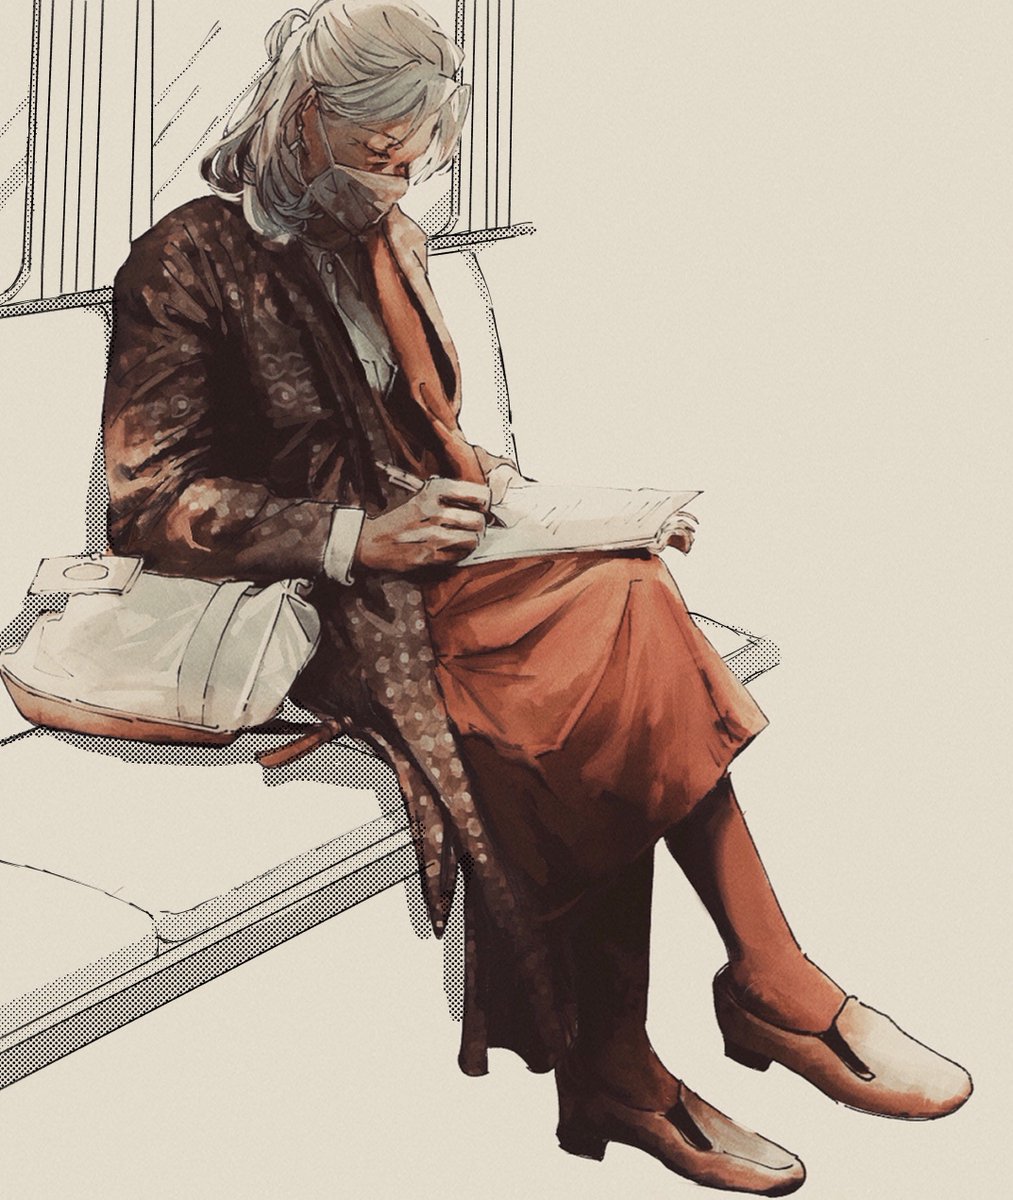 「電車で見かけためっちゃ好きな雰囲気のマダム描いた 」|ْのイラスト